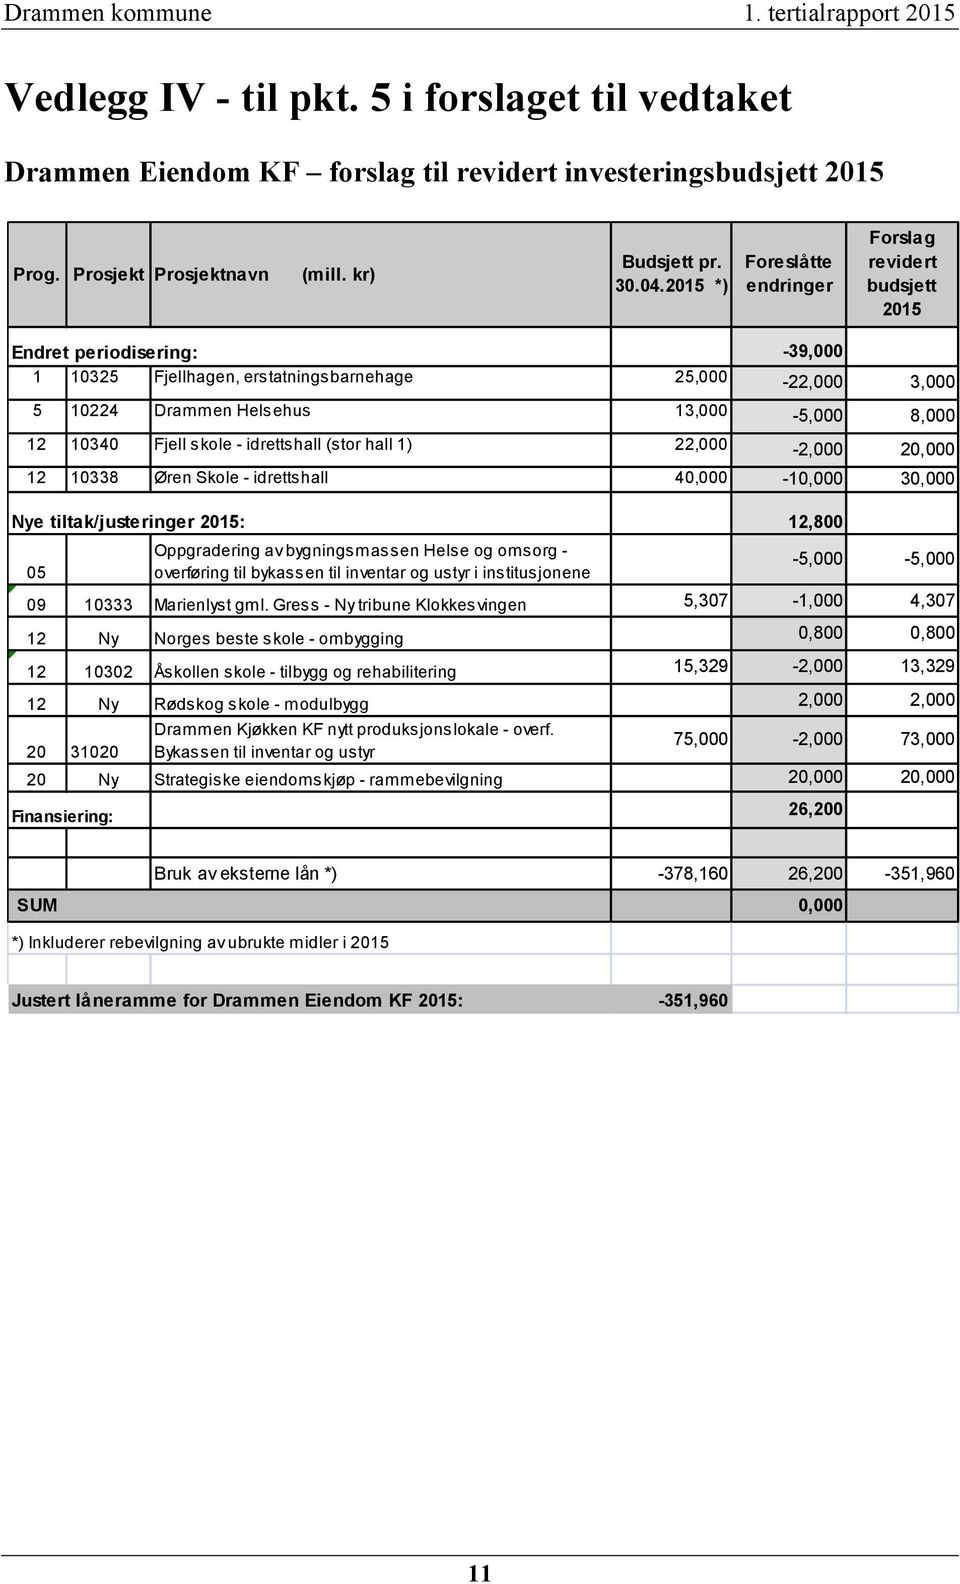 2015 *) Foreslåtte endringer Forslag revidert budsjett 2015 Endret periodisering: -39,000 1 10325 Fjellhagen, erstatningsbarnehage 25,000-22,000 3,000 5 10224 Drammen Helsehus 13,000-5,000 8,000 12